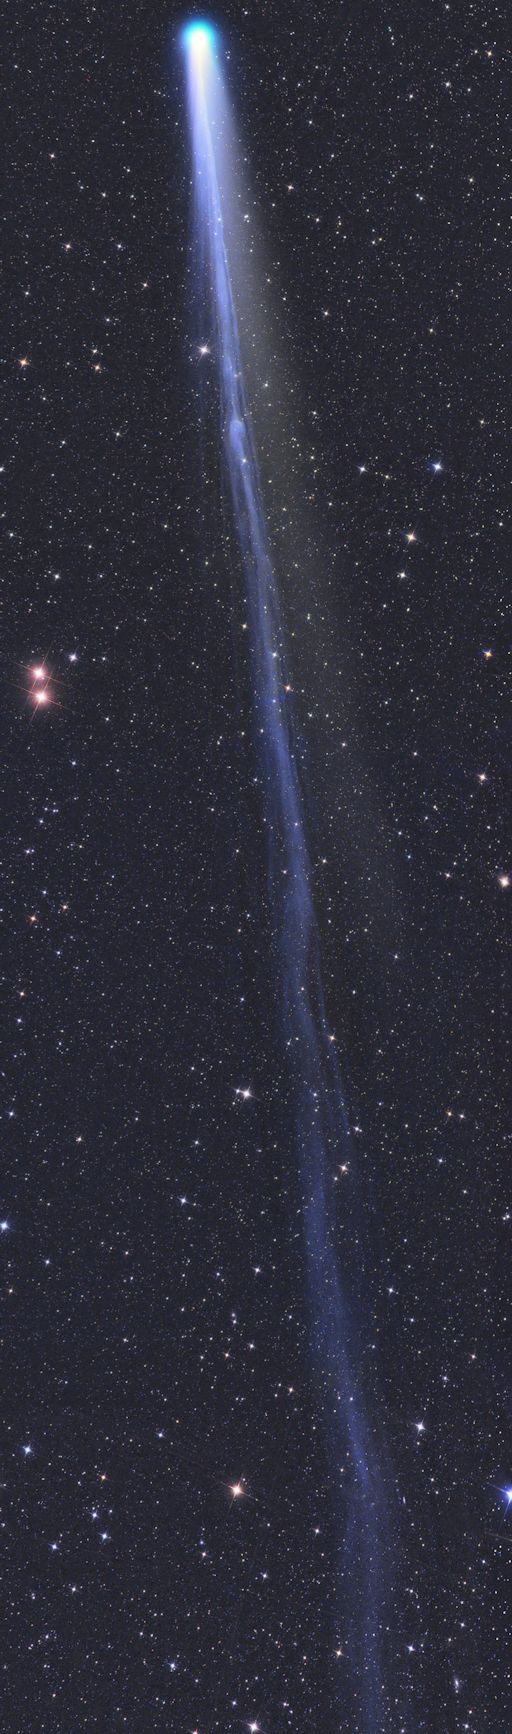 Довгий хвіст комети C/2013 R1 (Lovejoy)